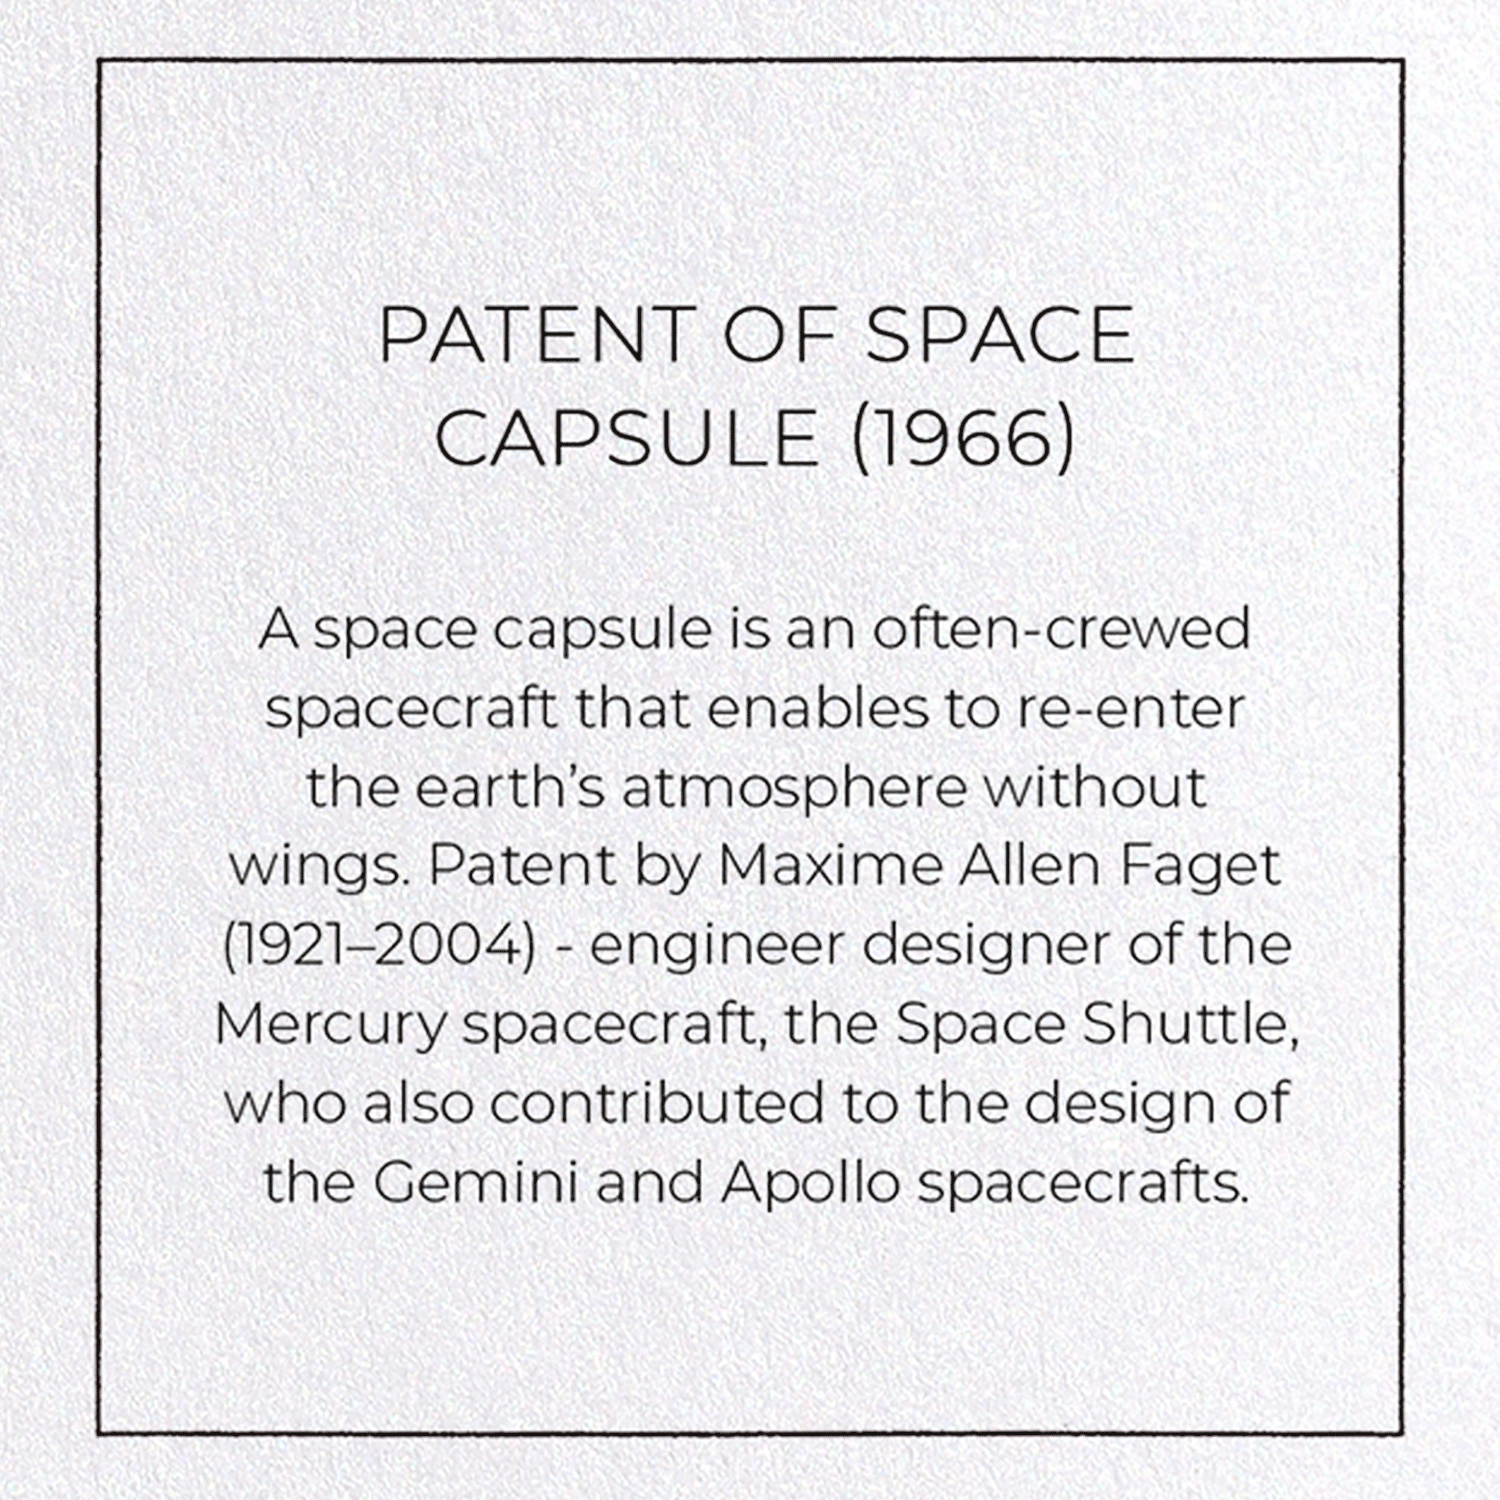 PATENT OF SPACE CAPSULE (1966)